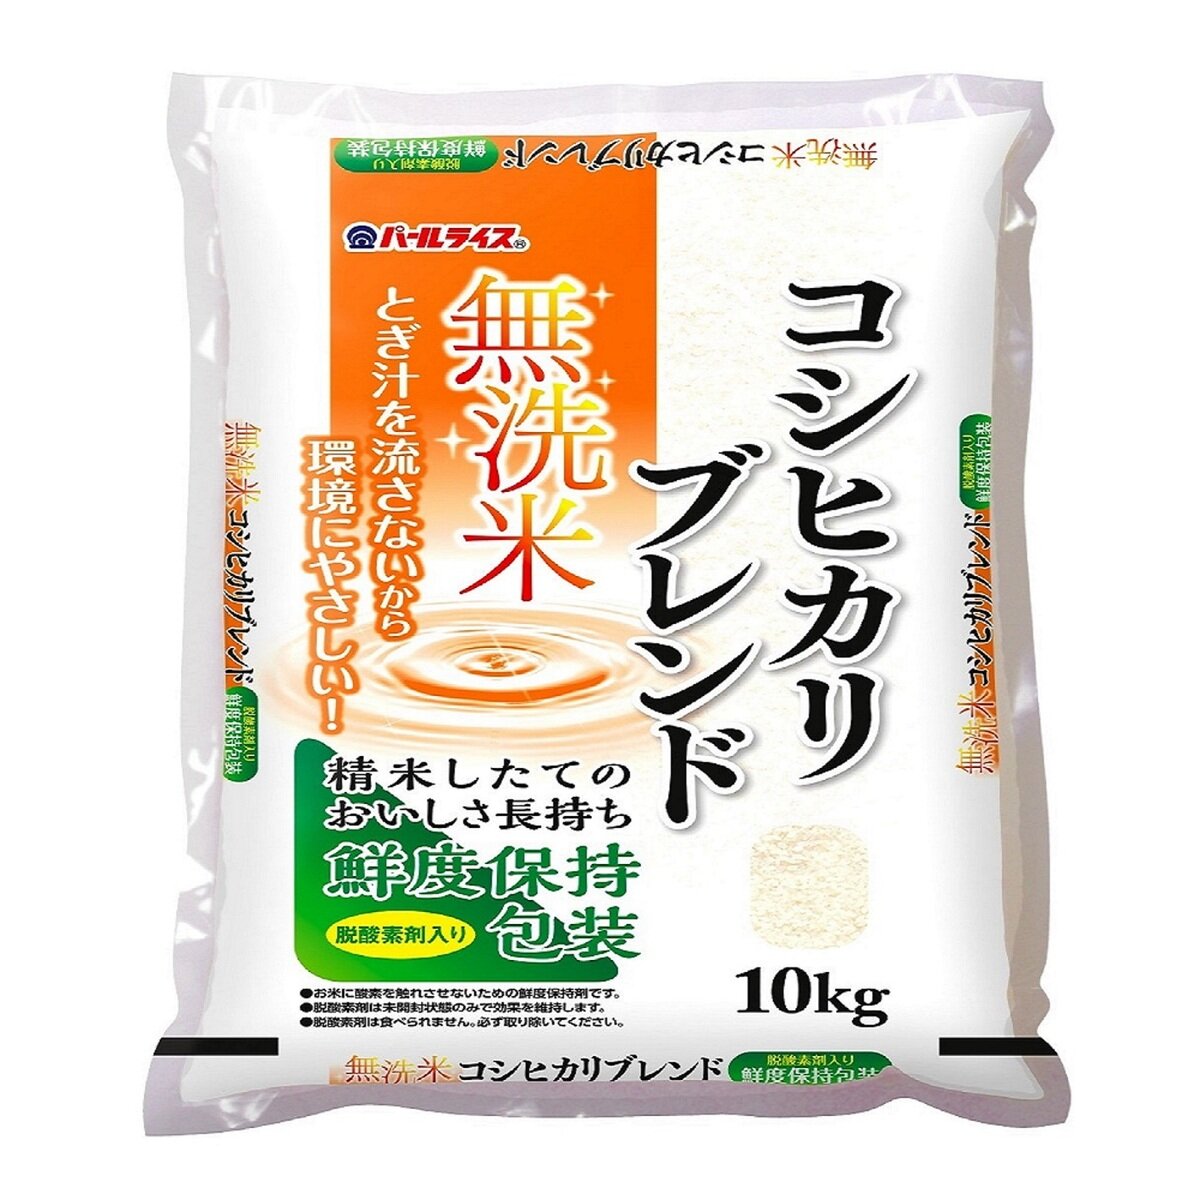 全農パールライス 無洗米コシヒカリブレンド 10kg Costco Japan